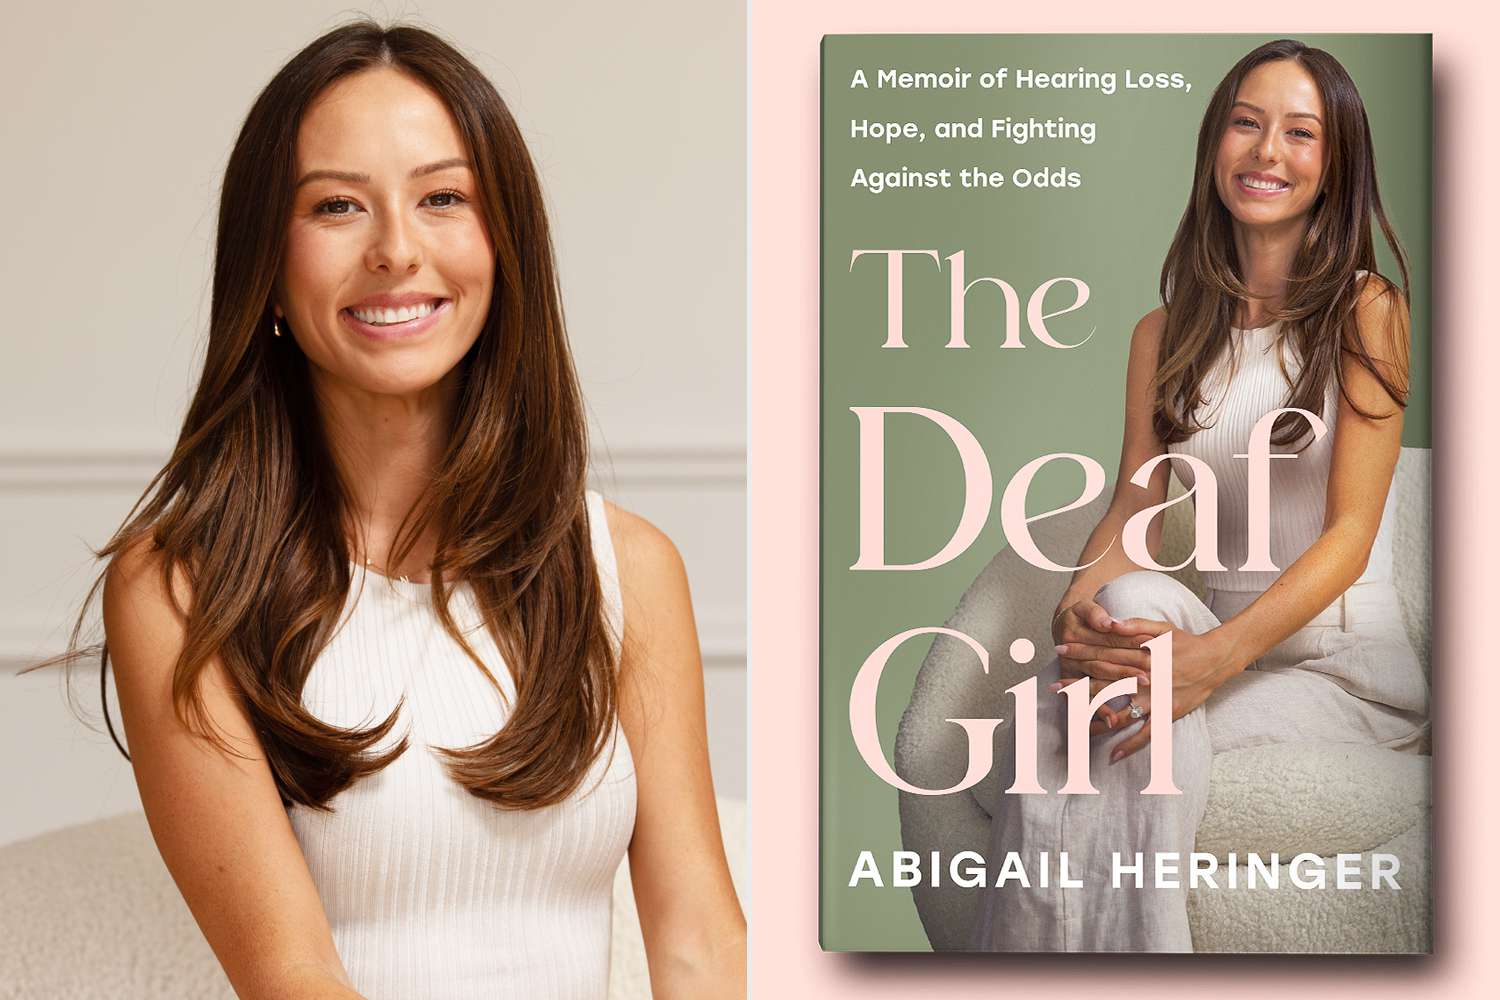 The Bachelor's Abigail Heringer Tells Her Story of 'Hearing Loss and Hope' in New Memoir The Deaf Girl